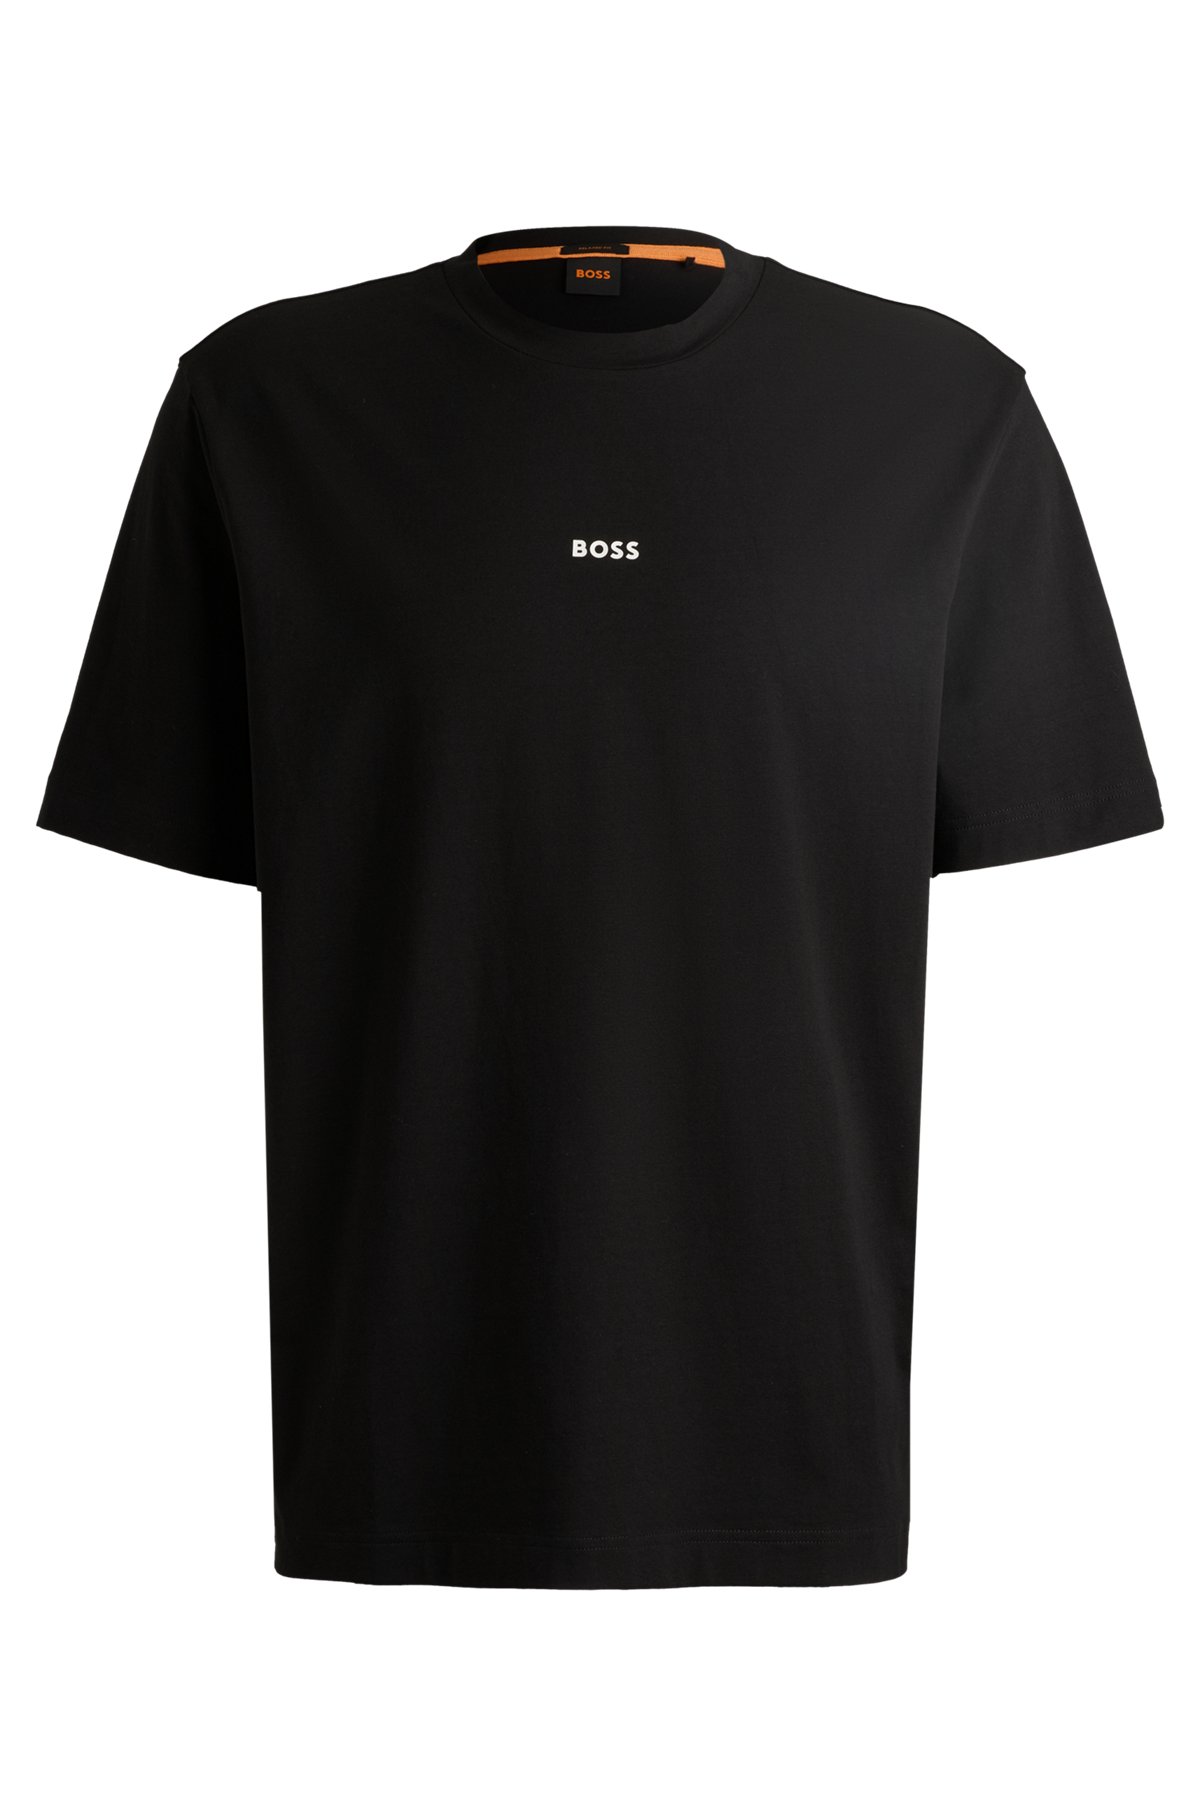 T-shirt relaxed fit in cotone elasticizzato con logo stampato, Nero